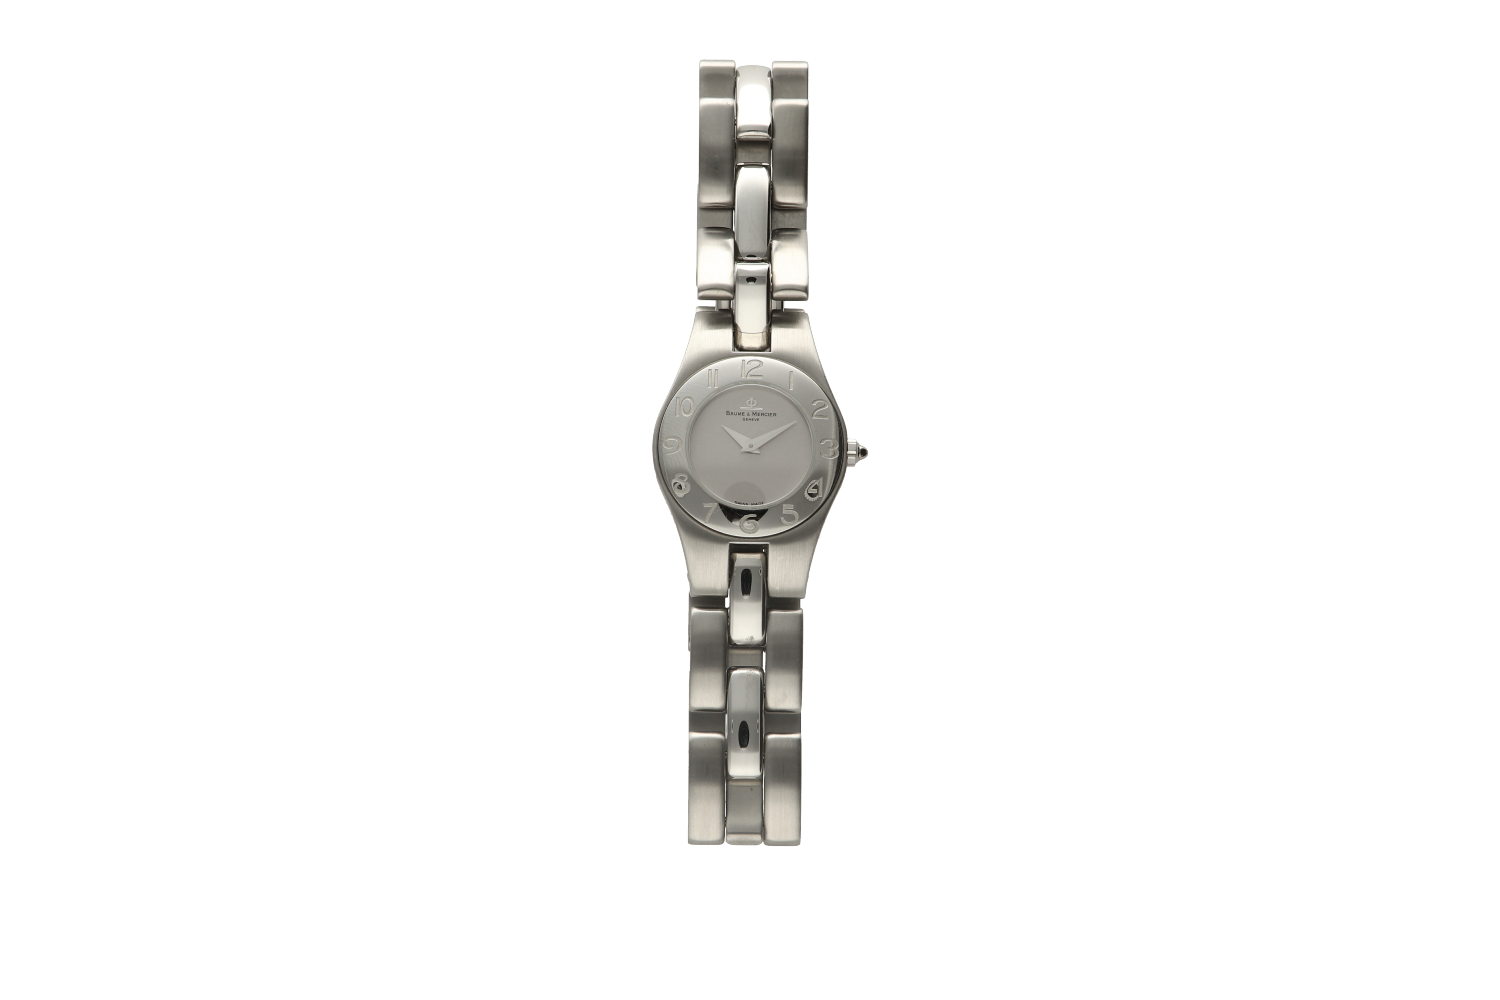 Ρολόι γυναικείο Baume & Mercier, LINEA 8109 σε ατσάλι με μπρασελέ ματ/γυαλιστερό S/N 3366569